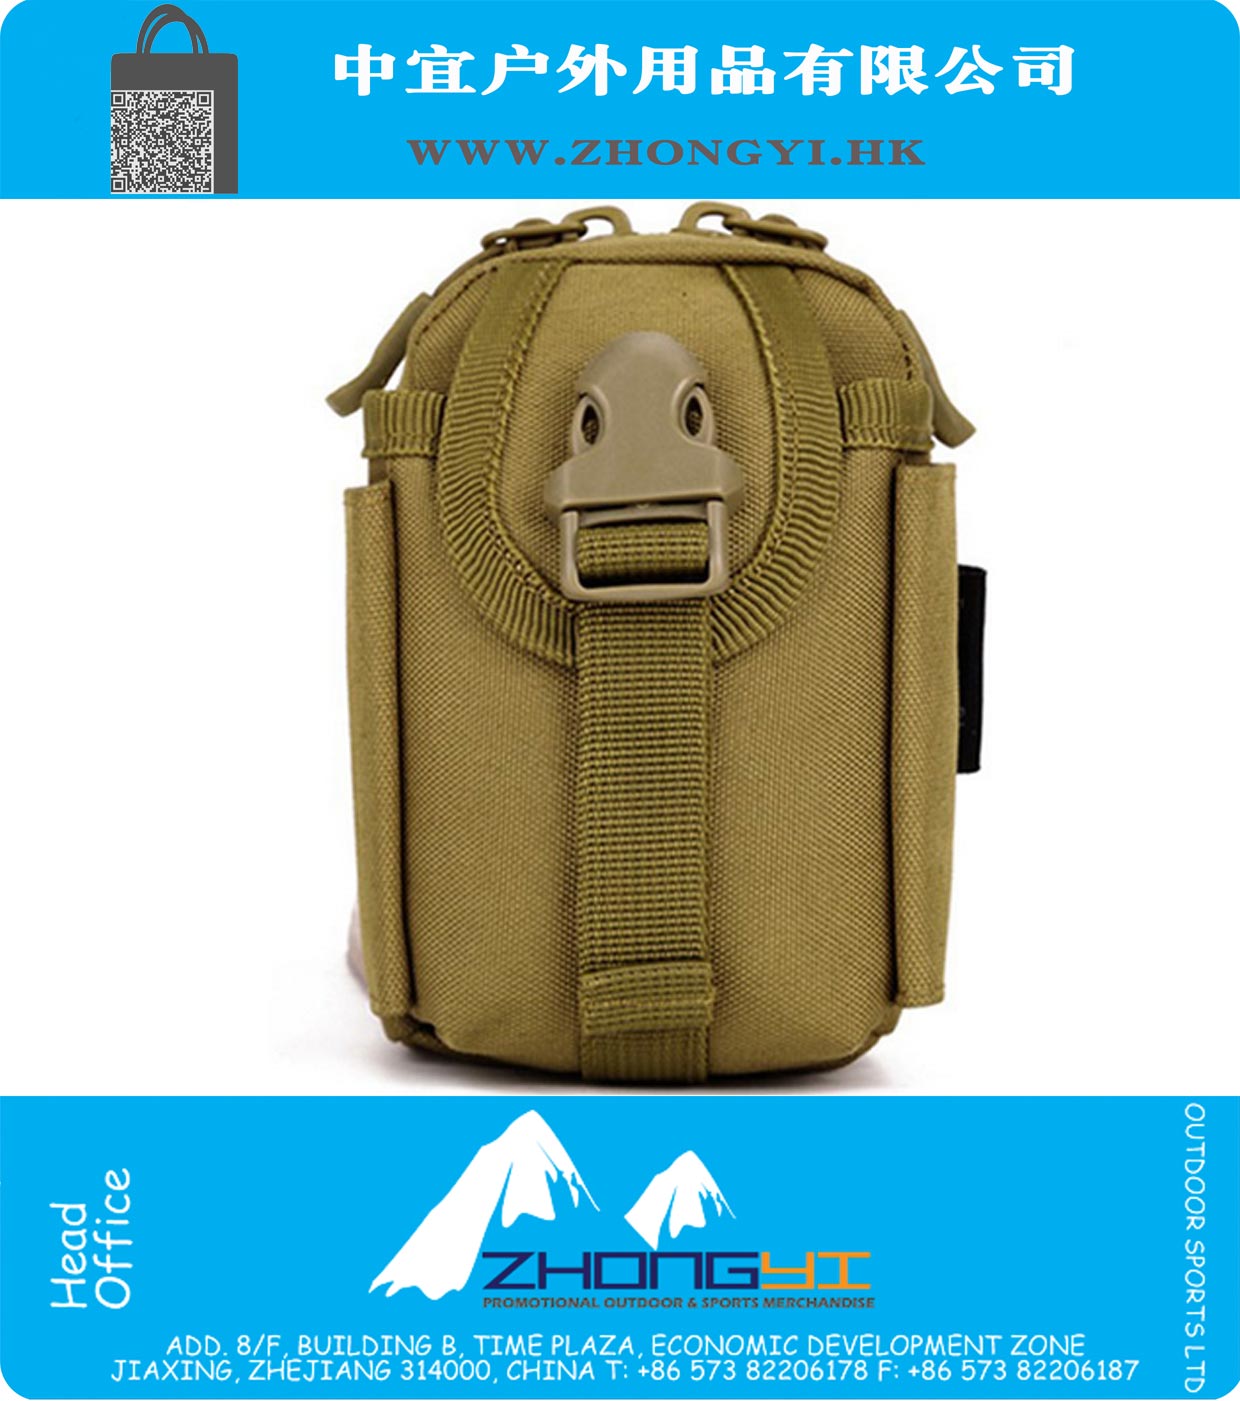 Tactical Melhorar Correndo pequena bolsa utilidade ferramenta kit saco da cintura Masculino Militar campo celular Mobile Phone Pacote Homens Outdoor Mini Belt